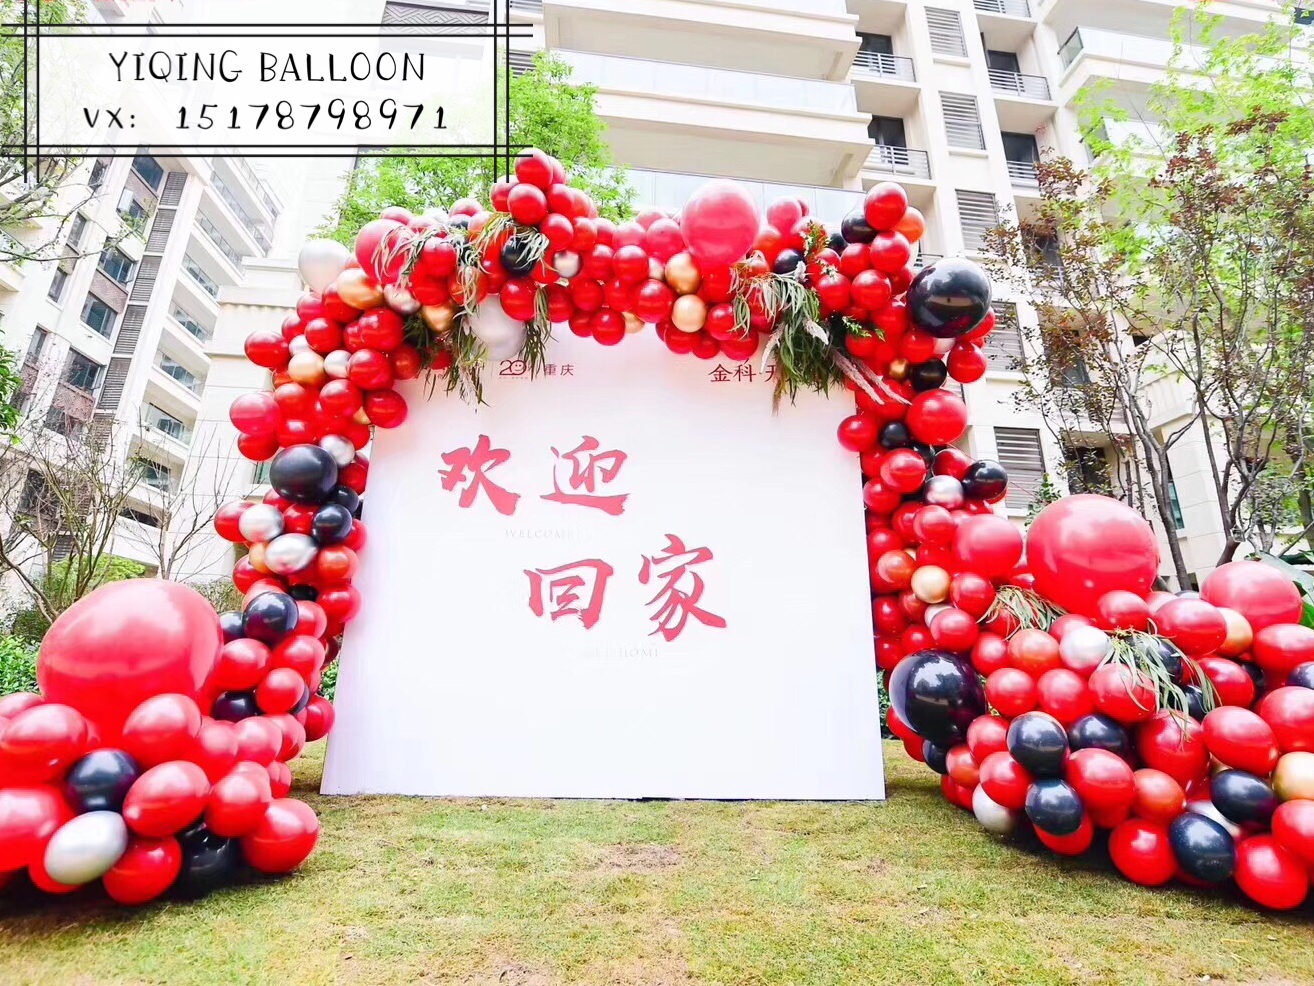 重庆上门布置房地产交房样板房商场橱窗门头场景气球活动派对策划